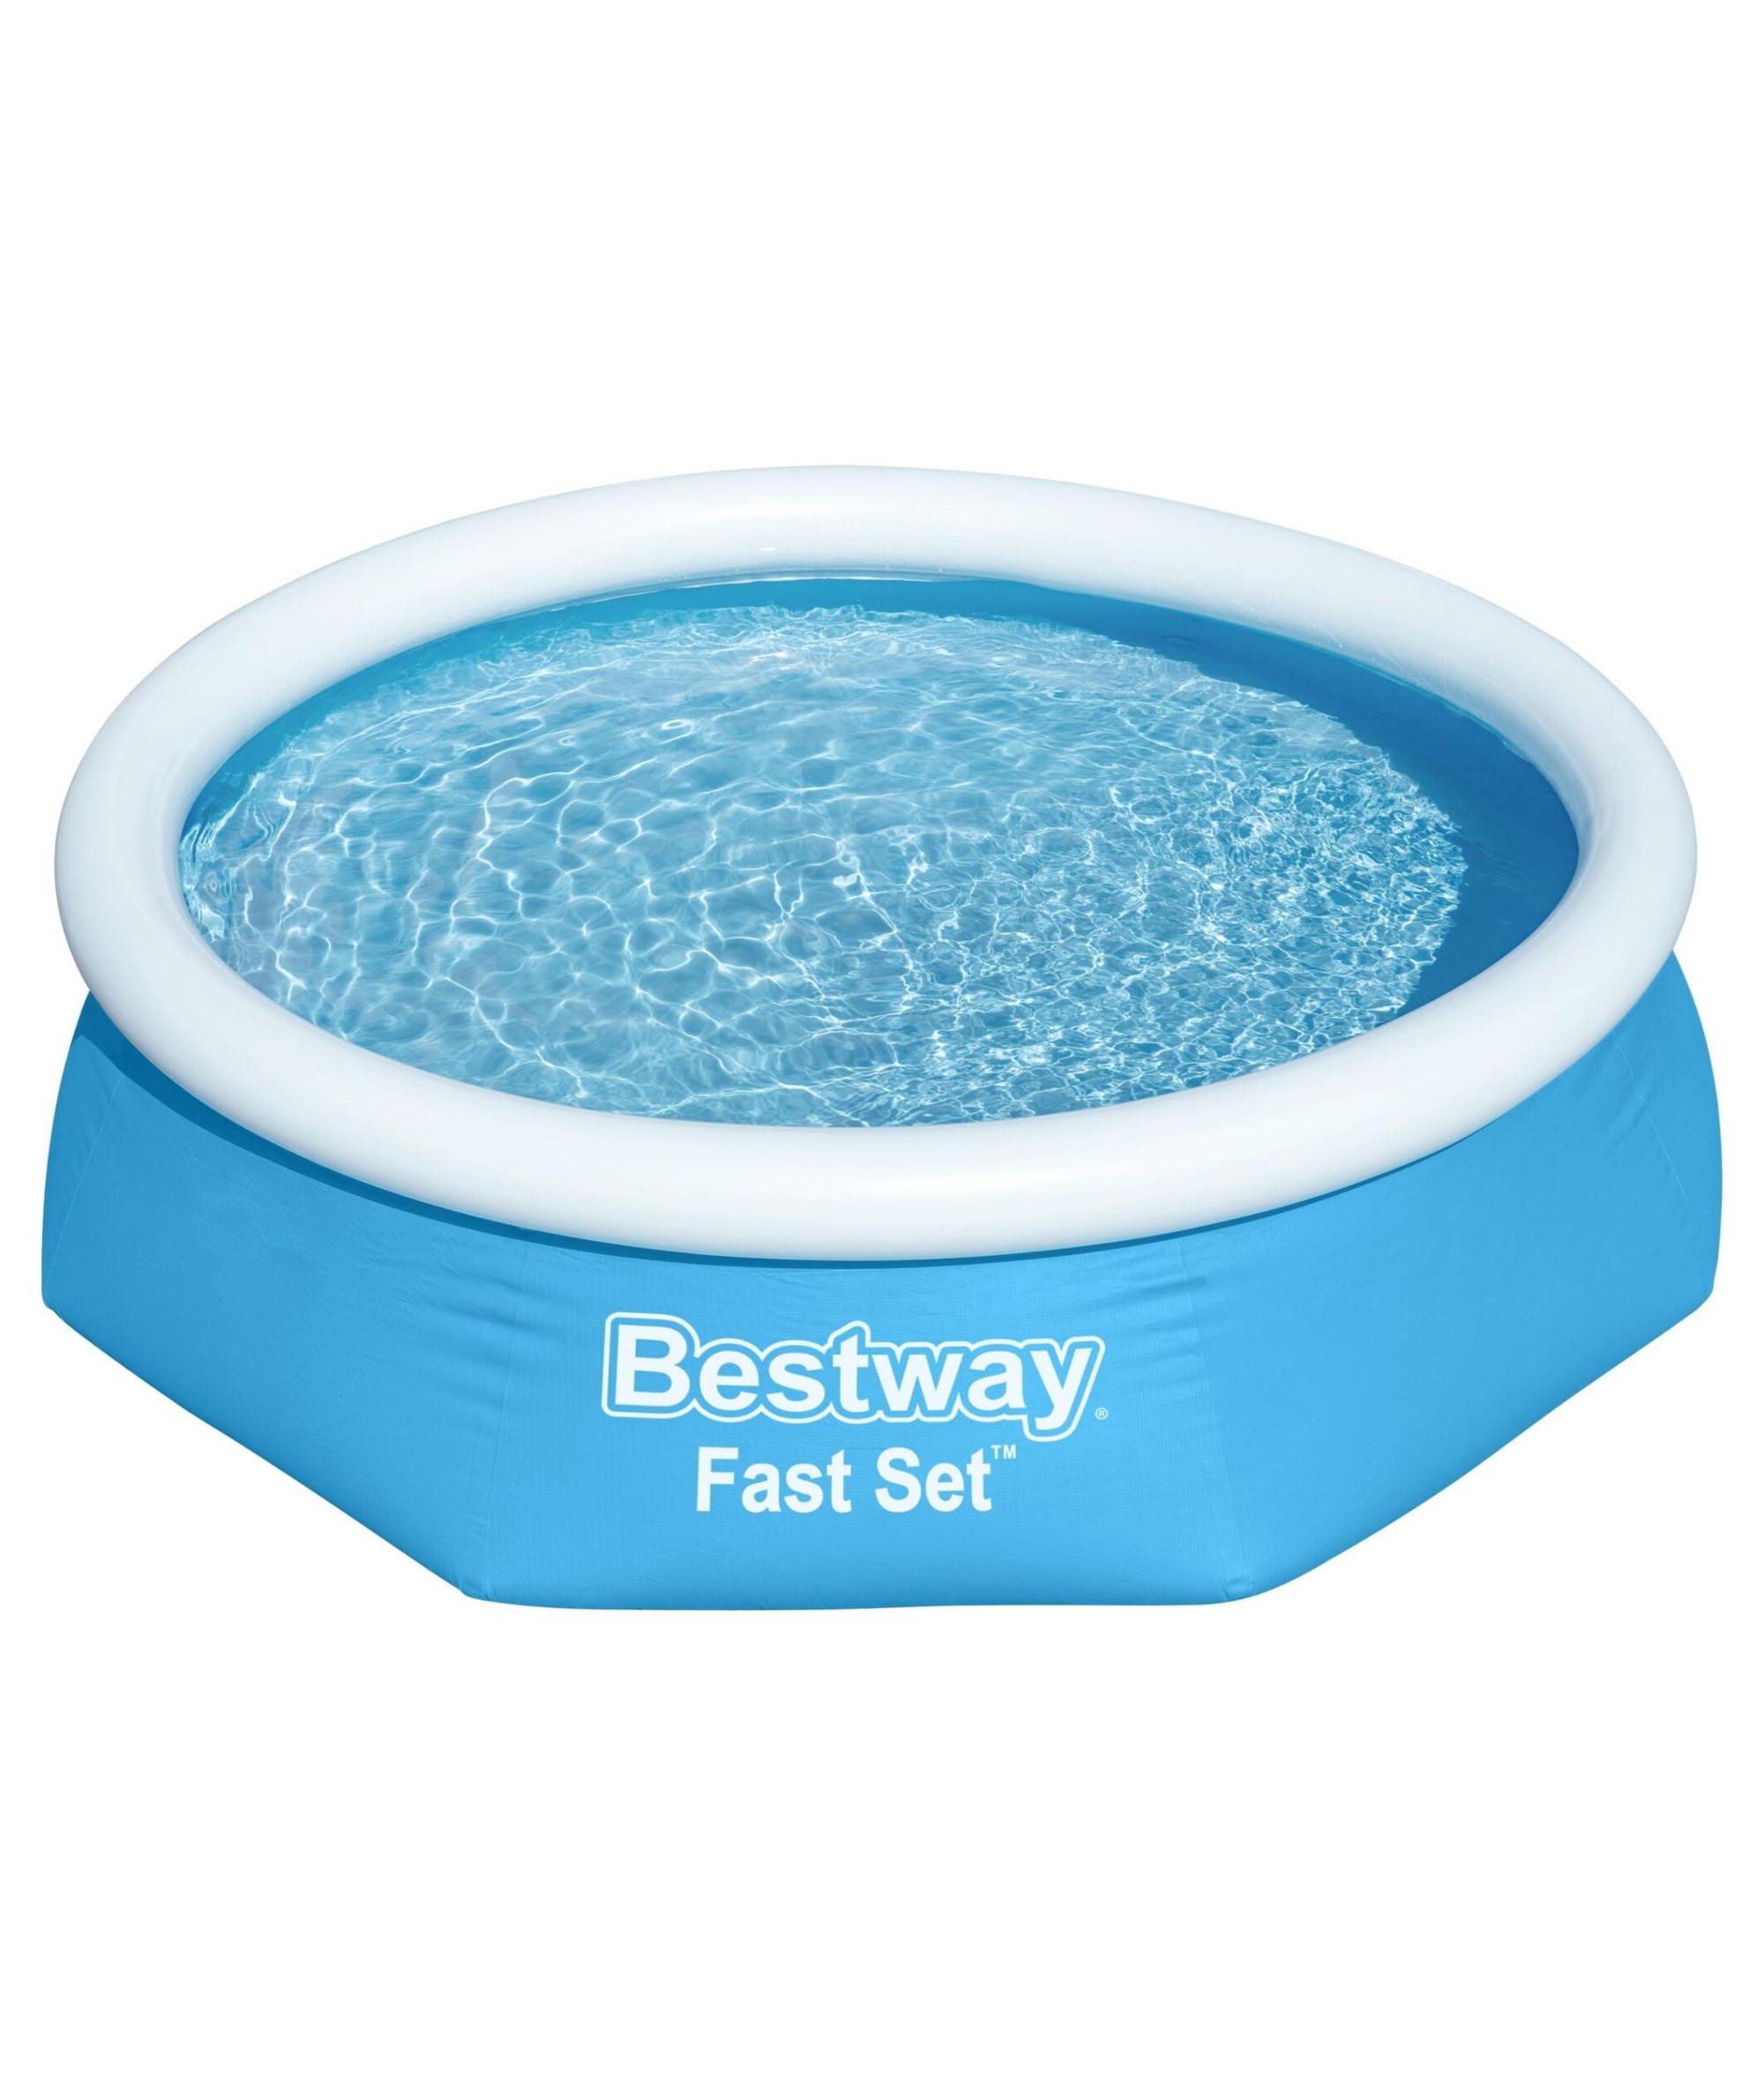 bestway fast set swimming pool